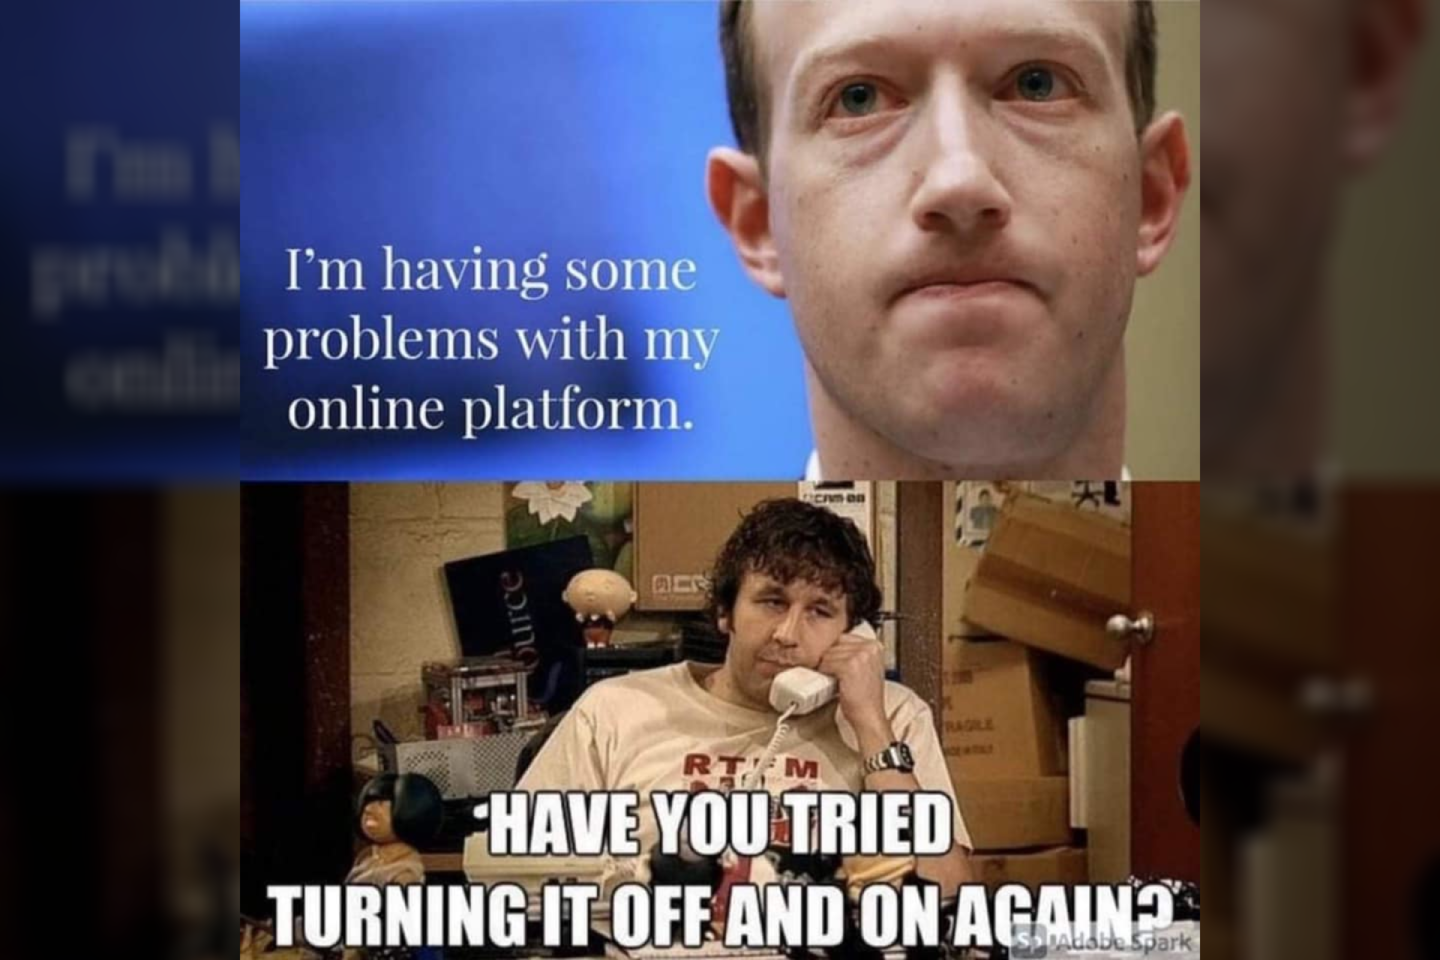  Internautai pokštauja apie  „Facebook“ ir jo paslaugų sutrikimą.